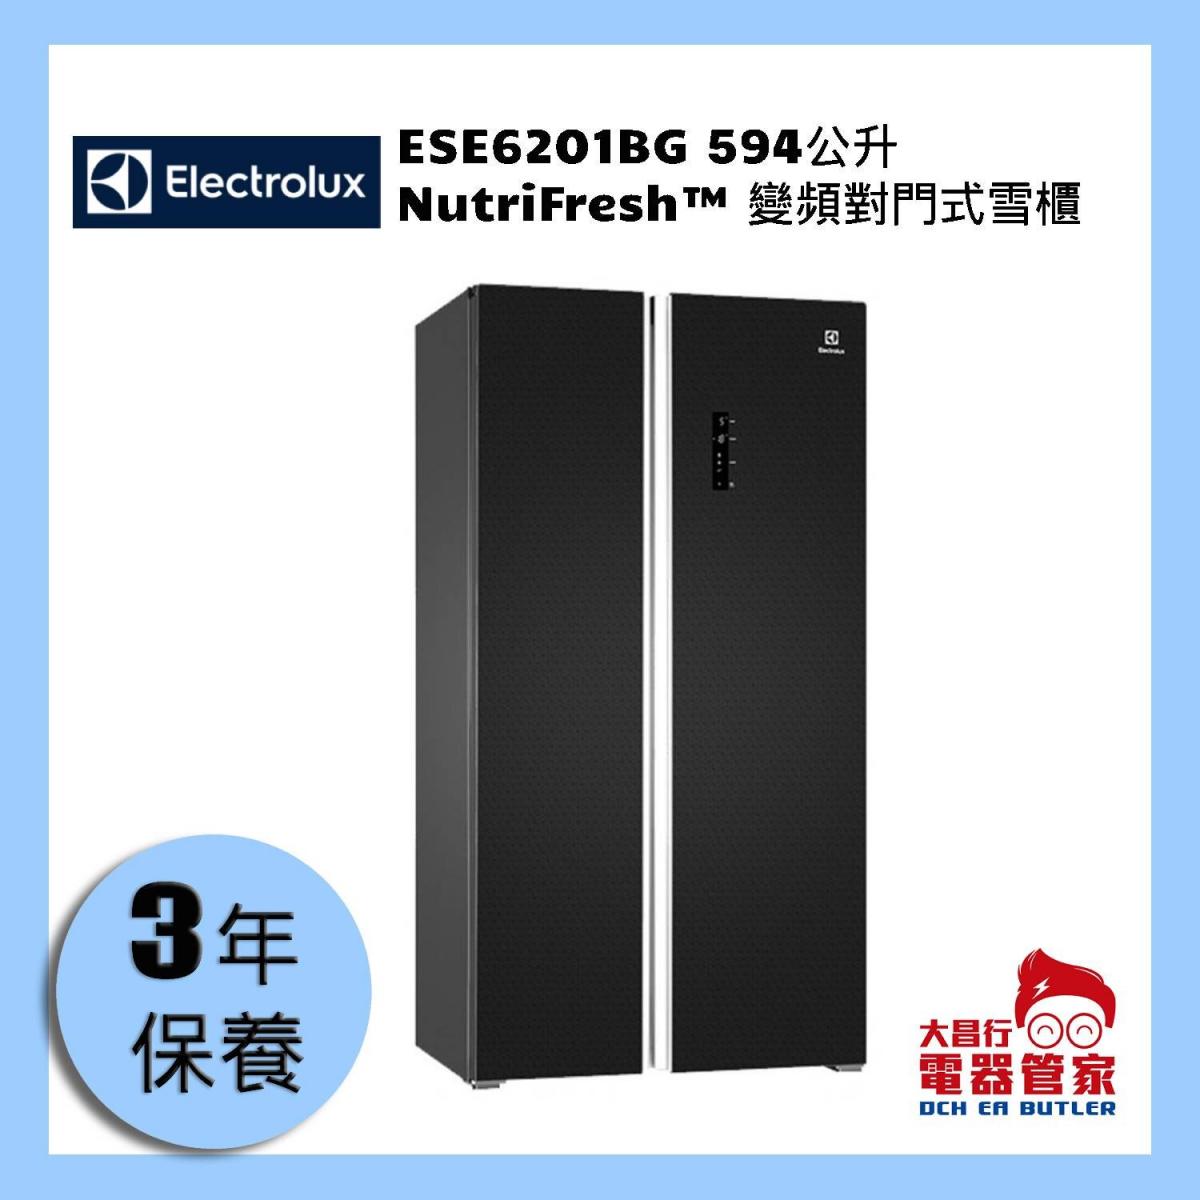 594公升 NutriFresh™ 變頻對門式雪櫃 ESE6201BG